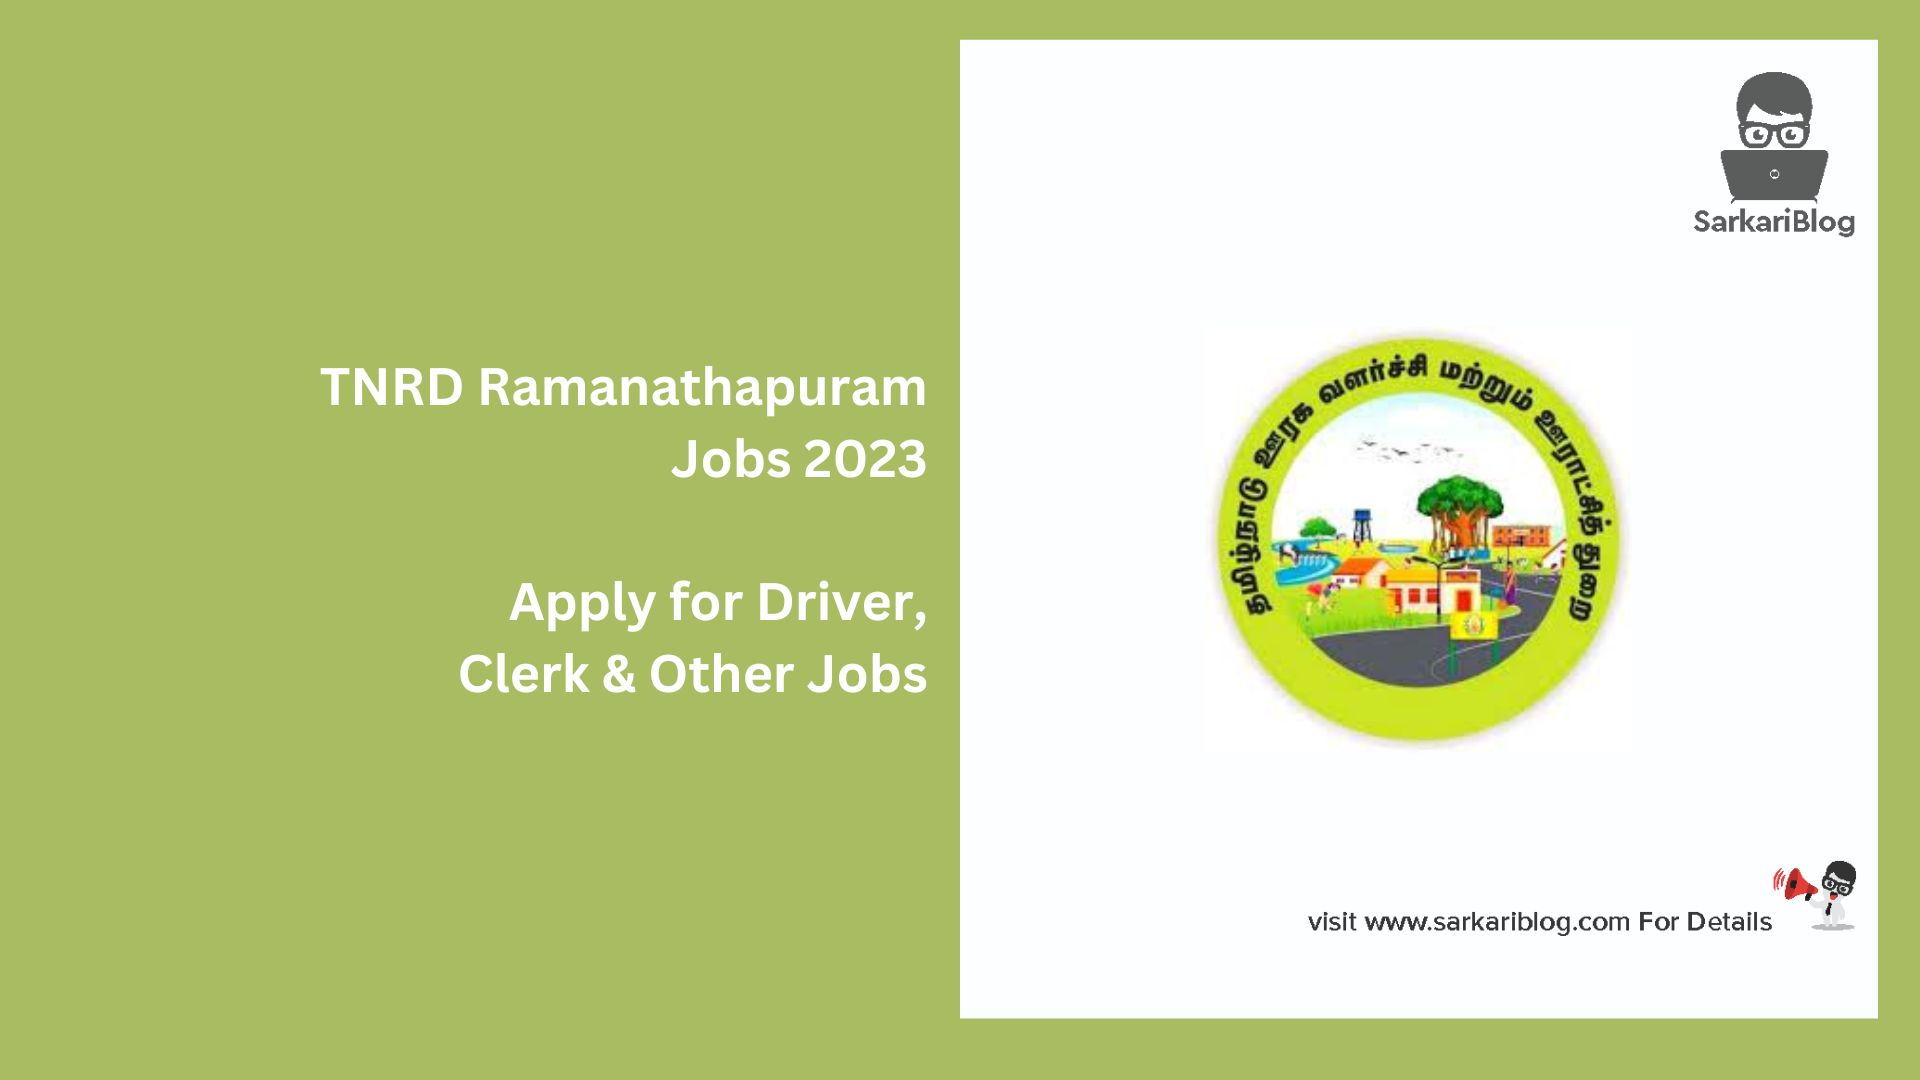 TNRD Ramanathapuram Jobs 2023